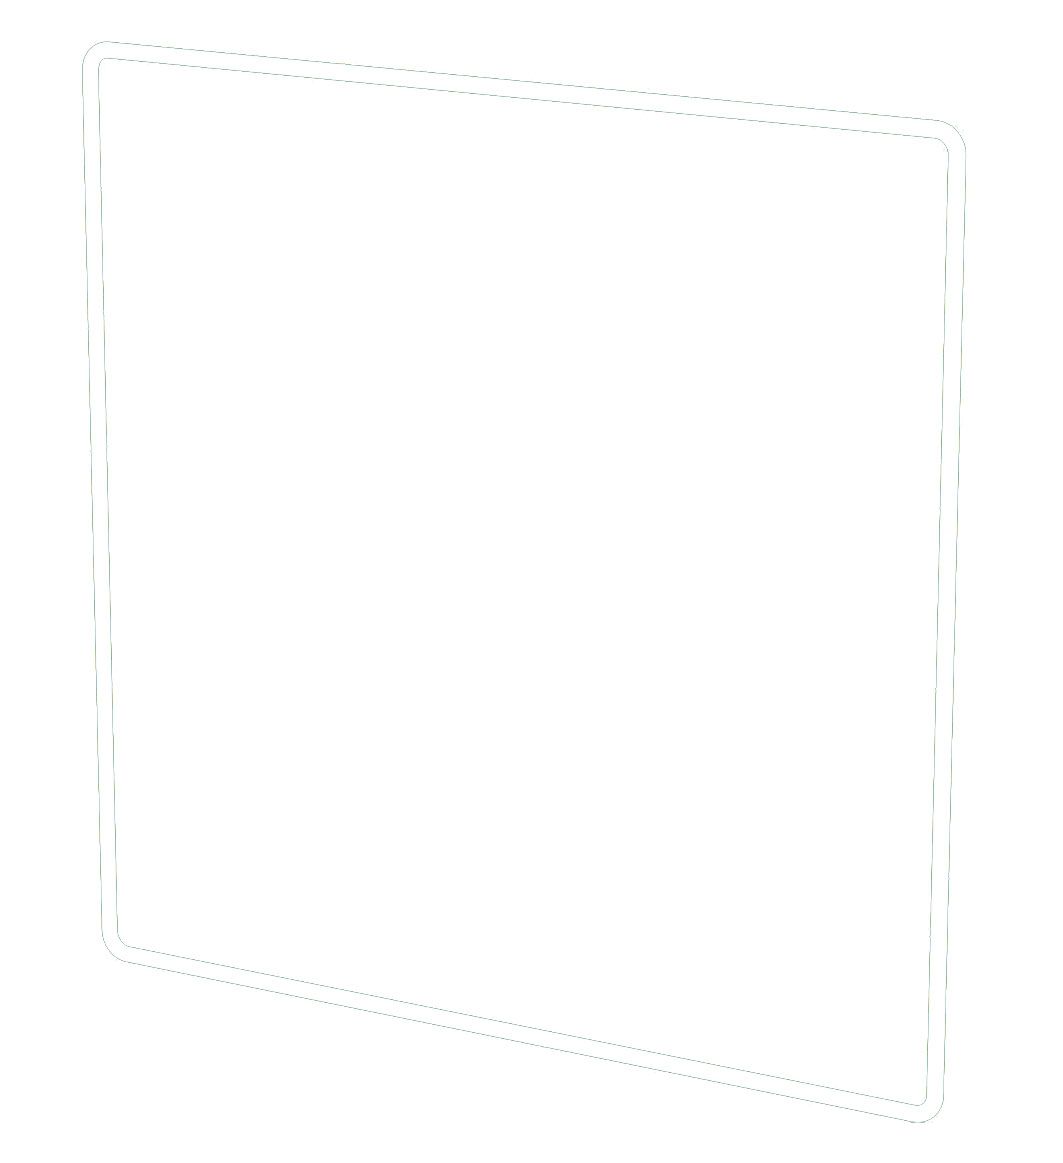 profil décoratif ta.3x3 priamos blanc